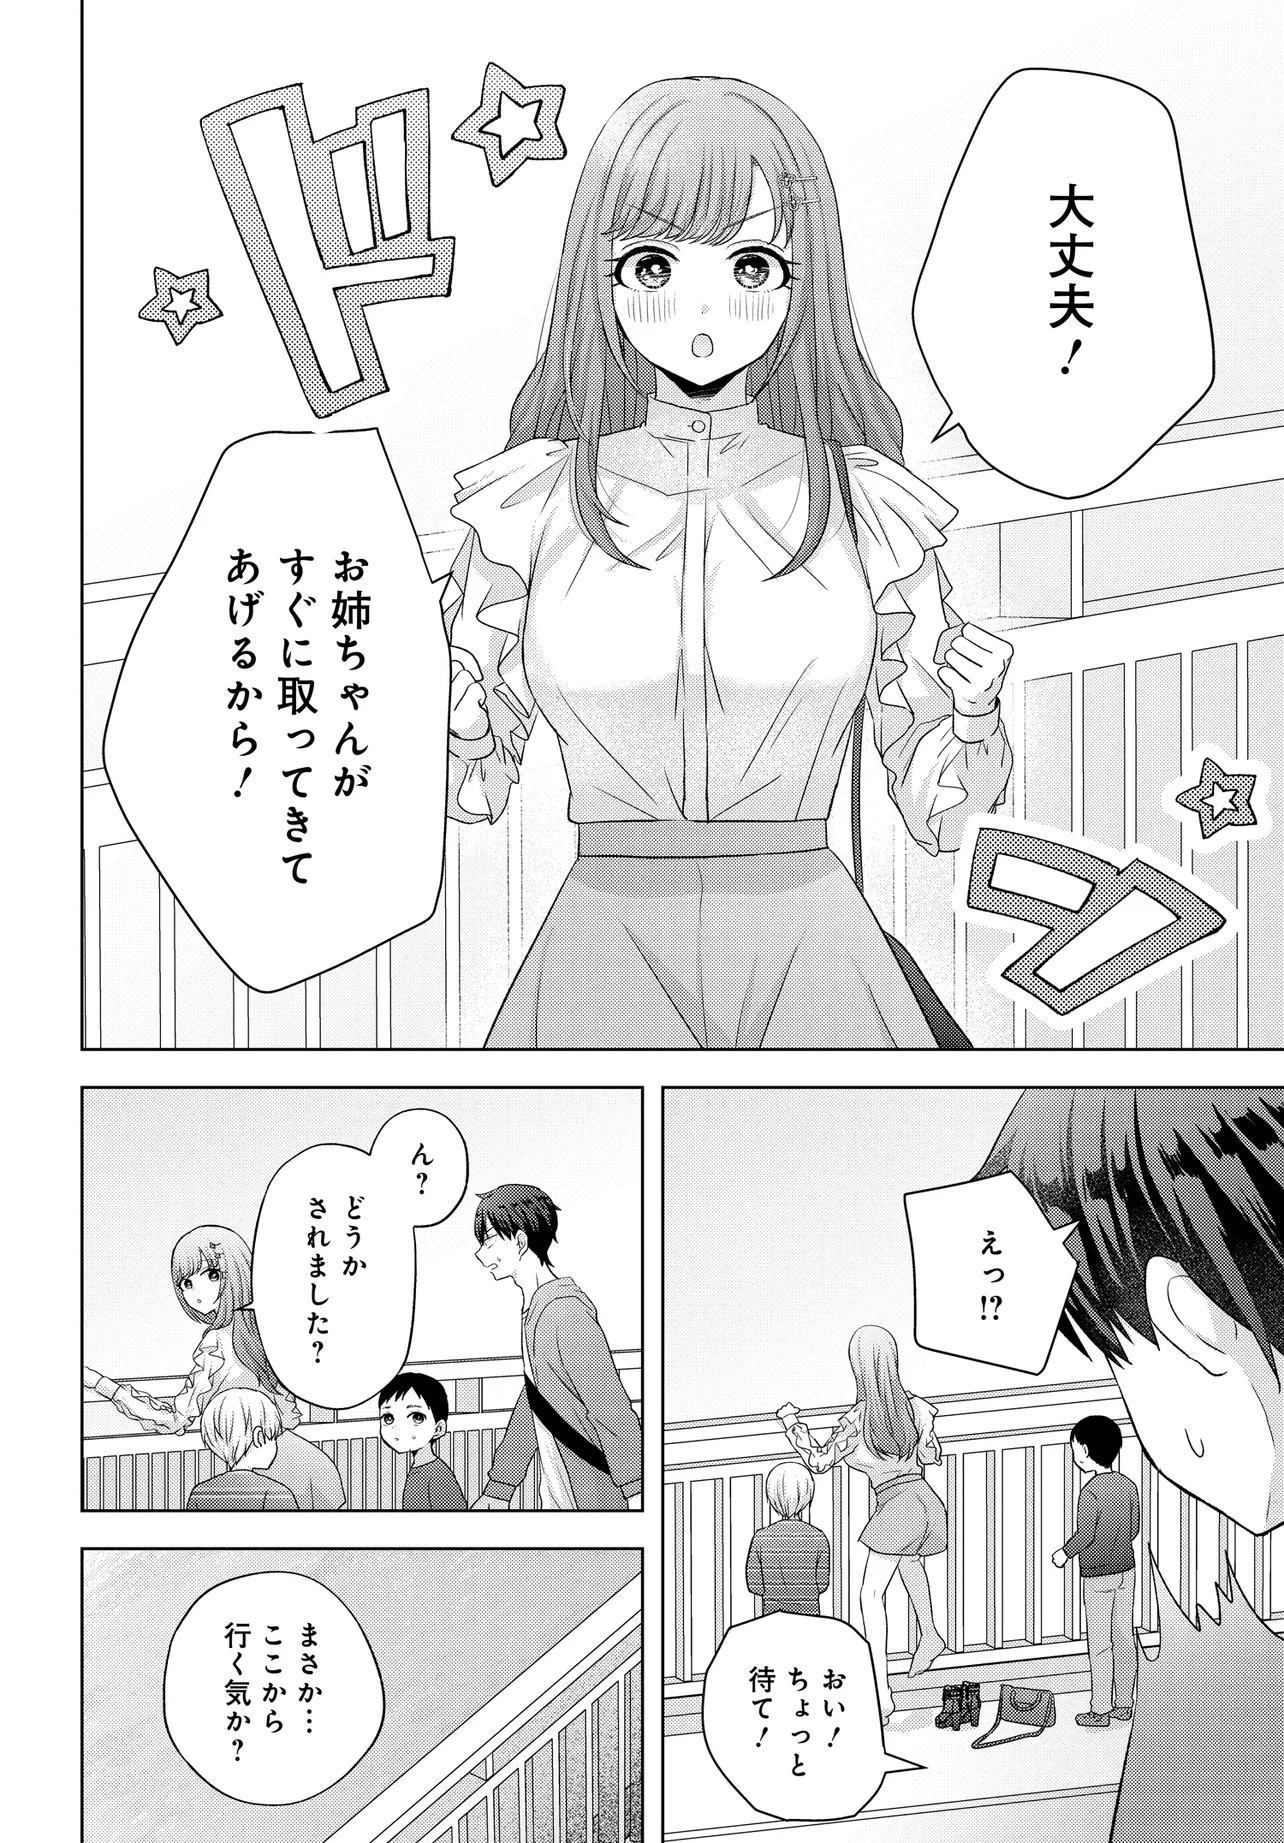 Suufun Go no Mirai ga Wakaru you ni Natta kedo, Onnagokoro wa Wakaranai. - Chapter 1 - Page 24